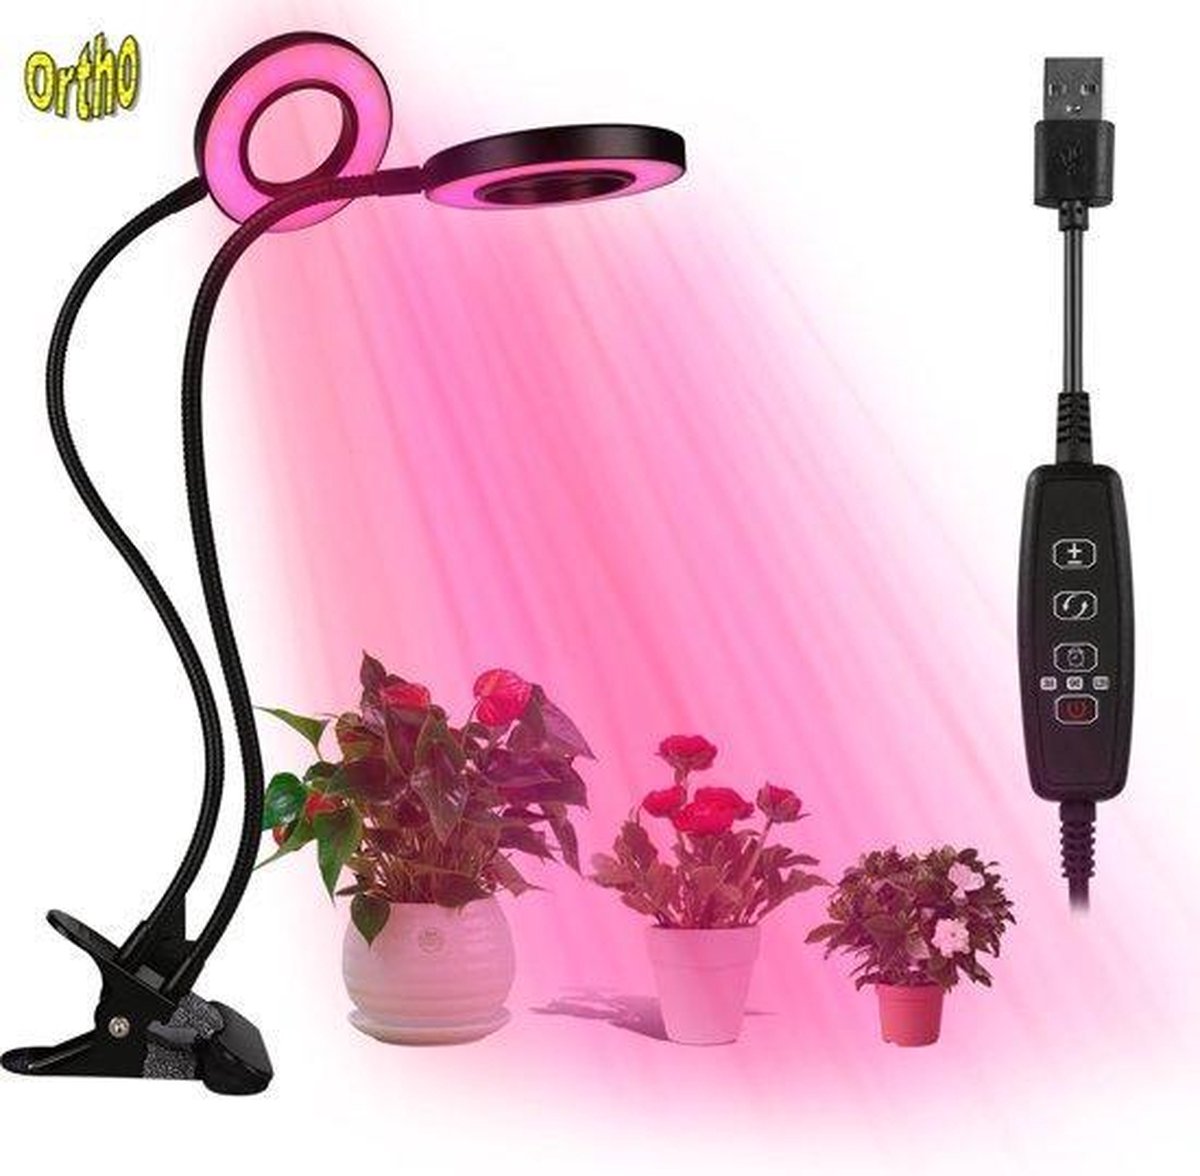 Ortho® - LED Groeilamp - Bloeilamp - Kweeklamp - Grow light - Groei lamp met 2 Ronde Lampen met Flexibele lamphouder - Klem spotje - 2x - Ortho